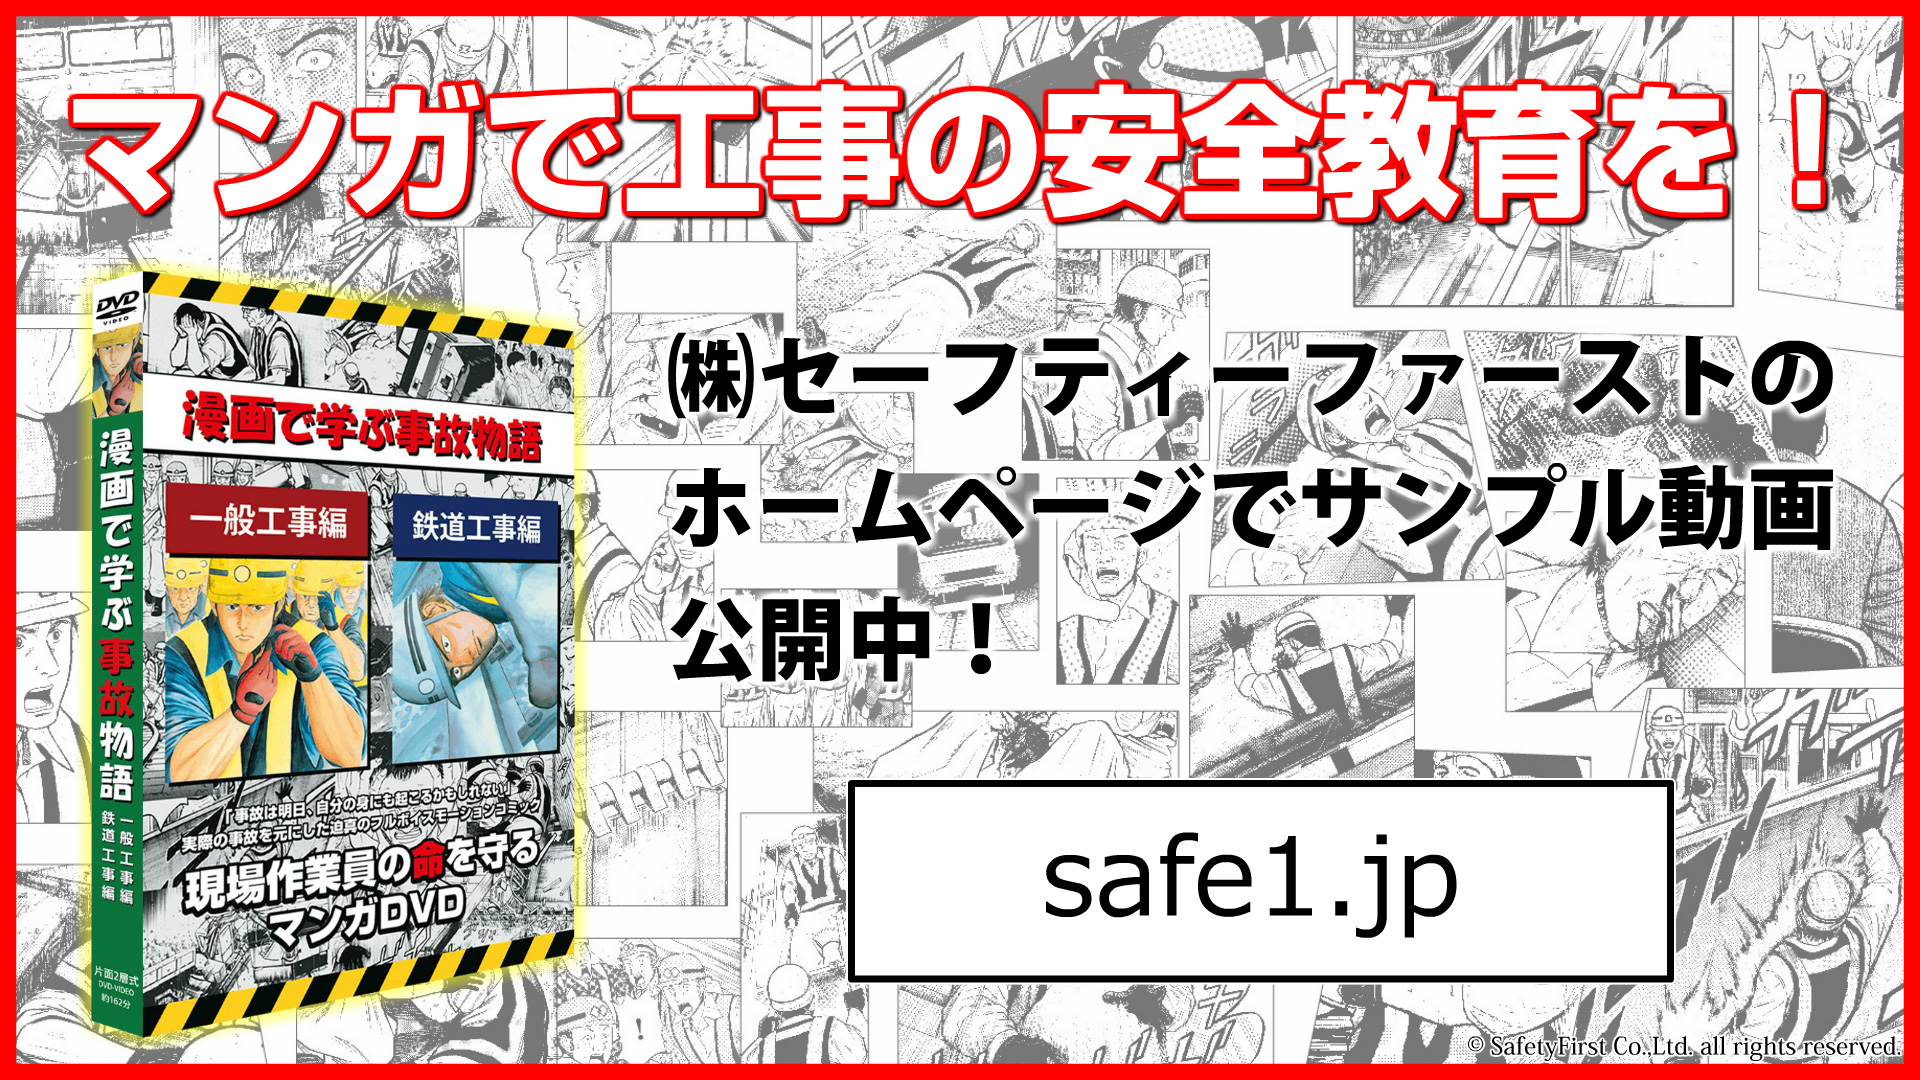 マンガ モーションコミックで工事の安全教育を行う 株 セーフティーファーストが公式ホームページ Safe1 Jp を新たに開設 株式会社セーフティファーストのプレスリリース